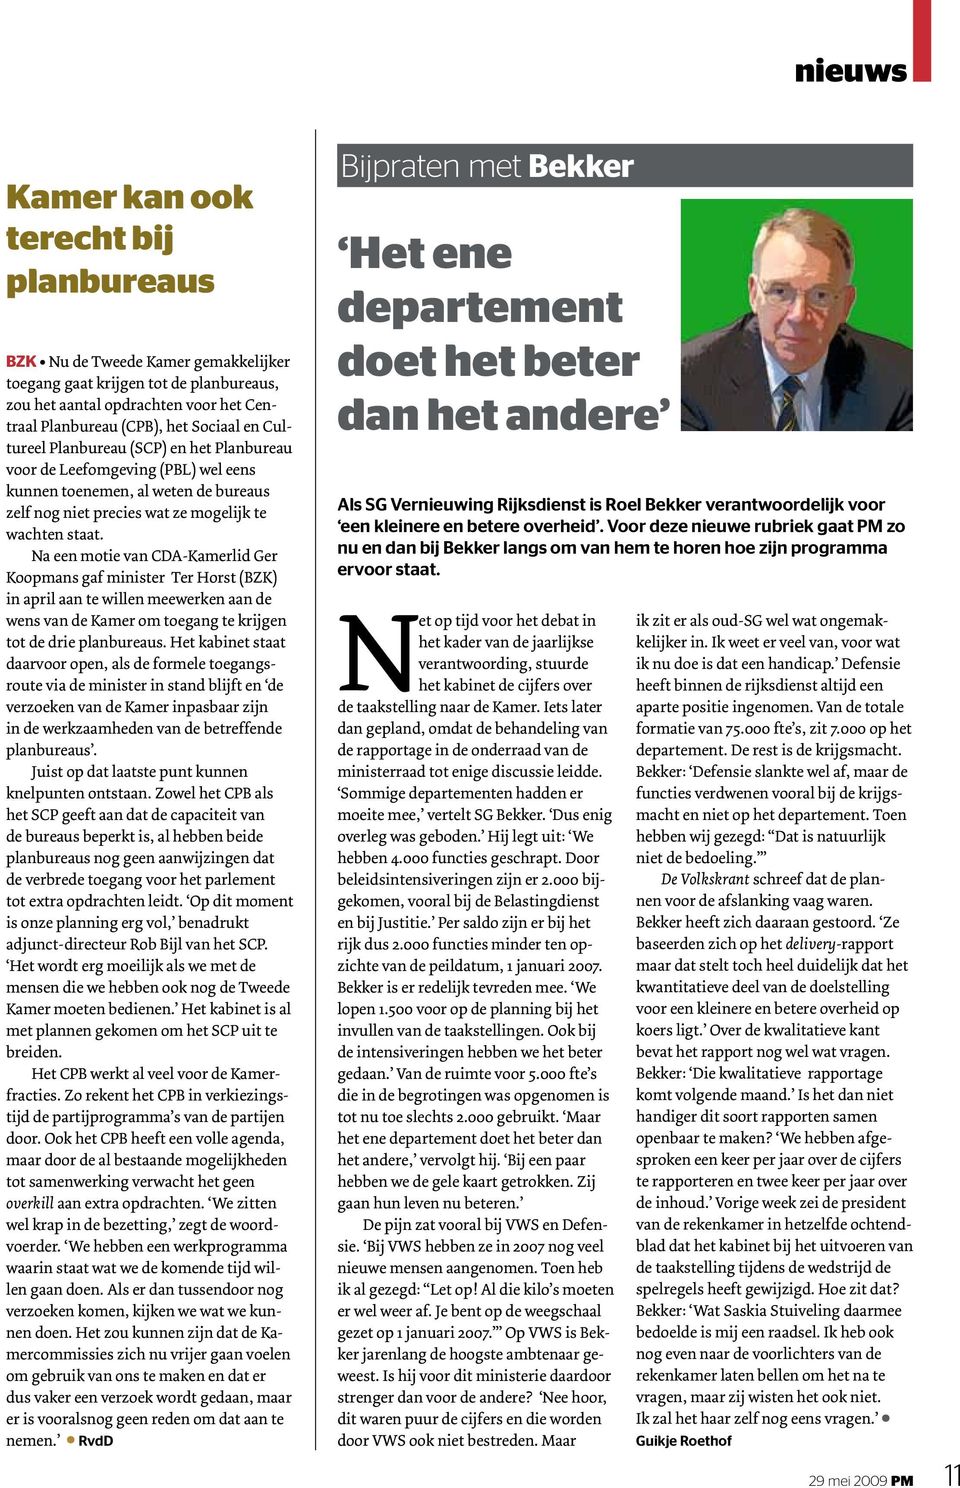 Na een motie van CDA-Kamerlid Ger Koopmans gaf minister Ter Horst (BZK) in april aan te willen meewerken aan de wens van de Kamer om toegang te krijgen tot de drie planbureaus.